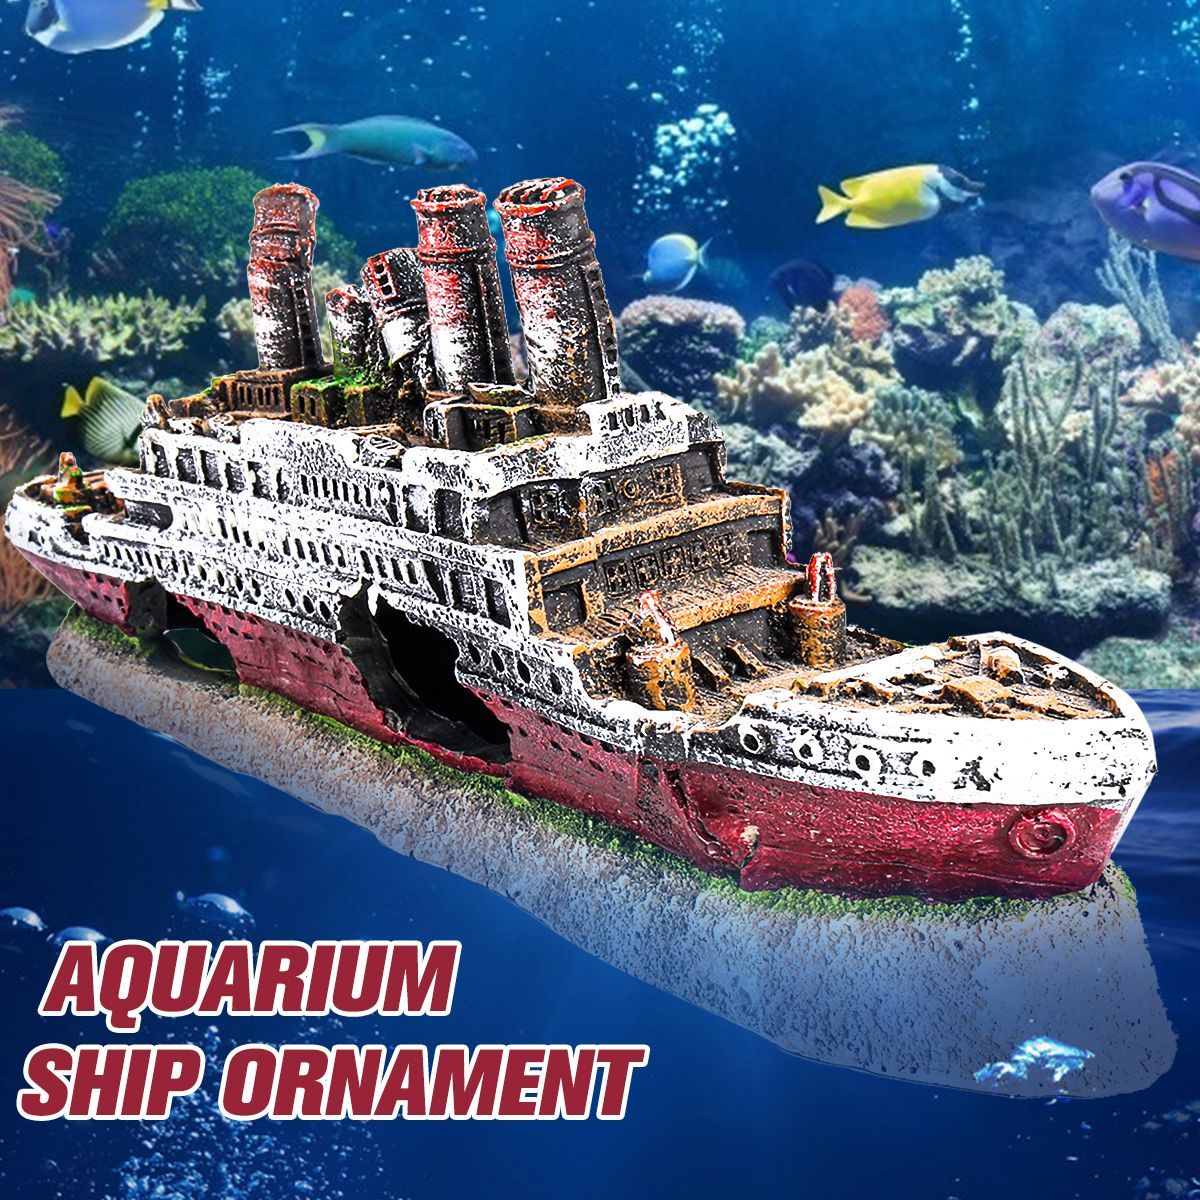 Aquarium-Ship-Ornament-Wreck-Boat-Fish-Tank-Cave-Resin-Decoration-27x52x95cm-1704612